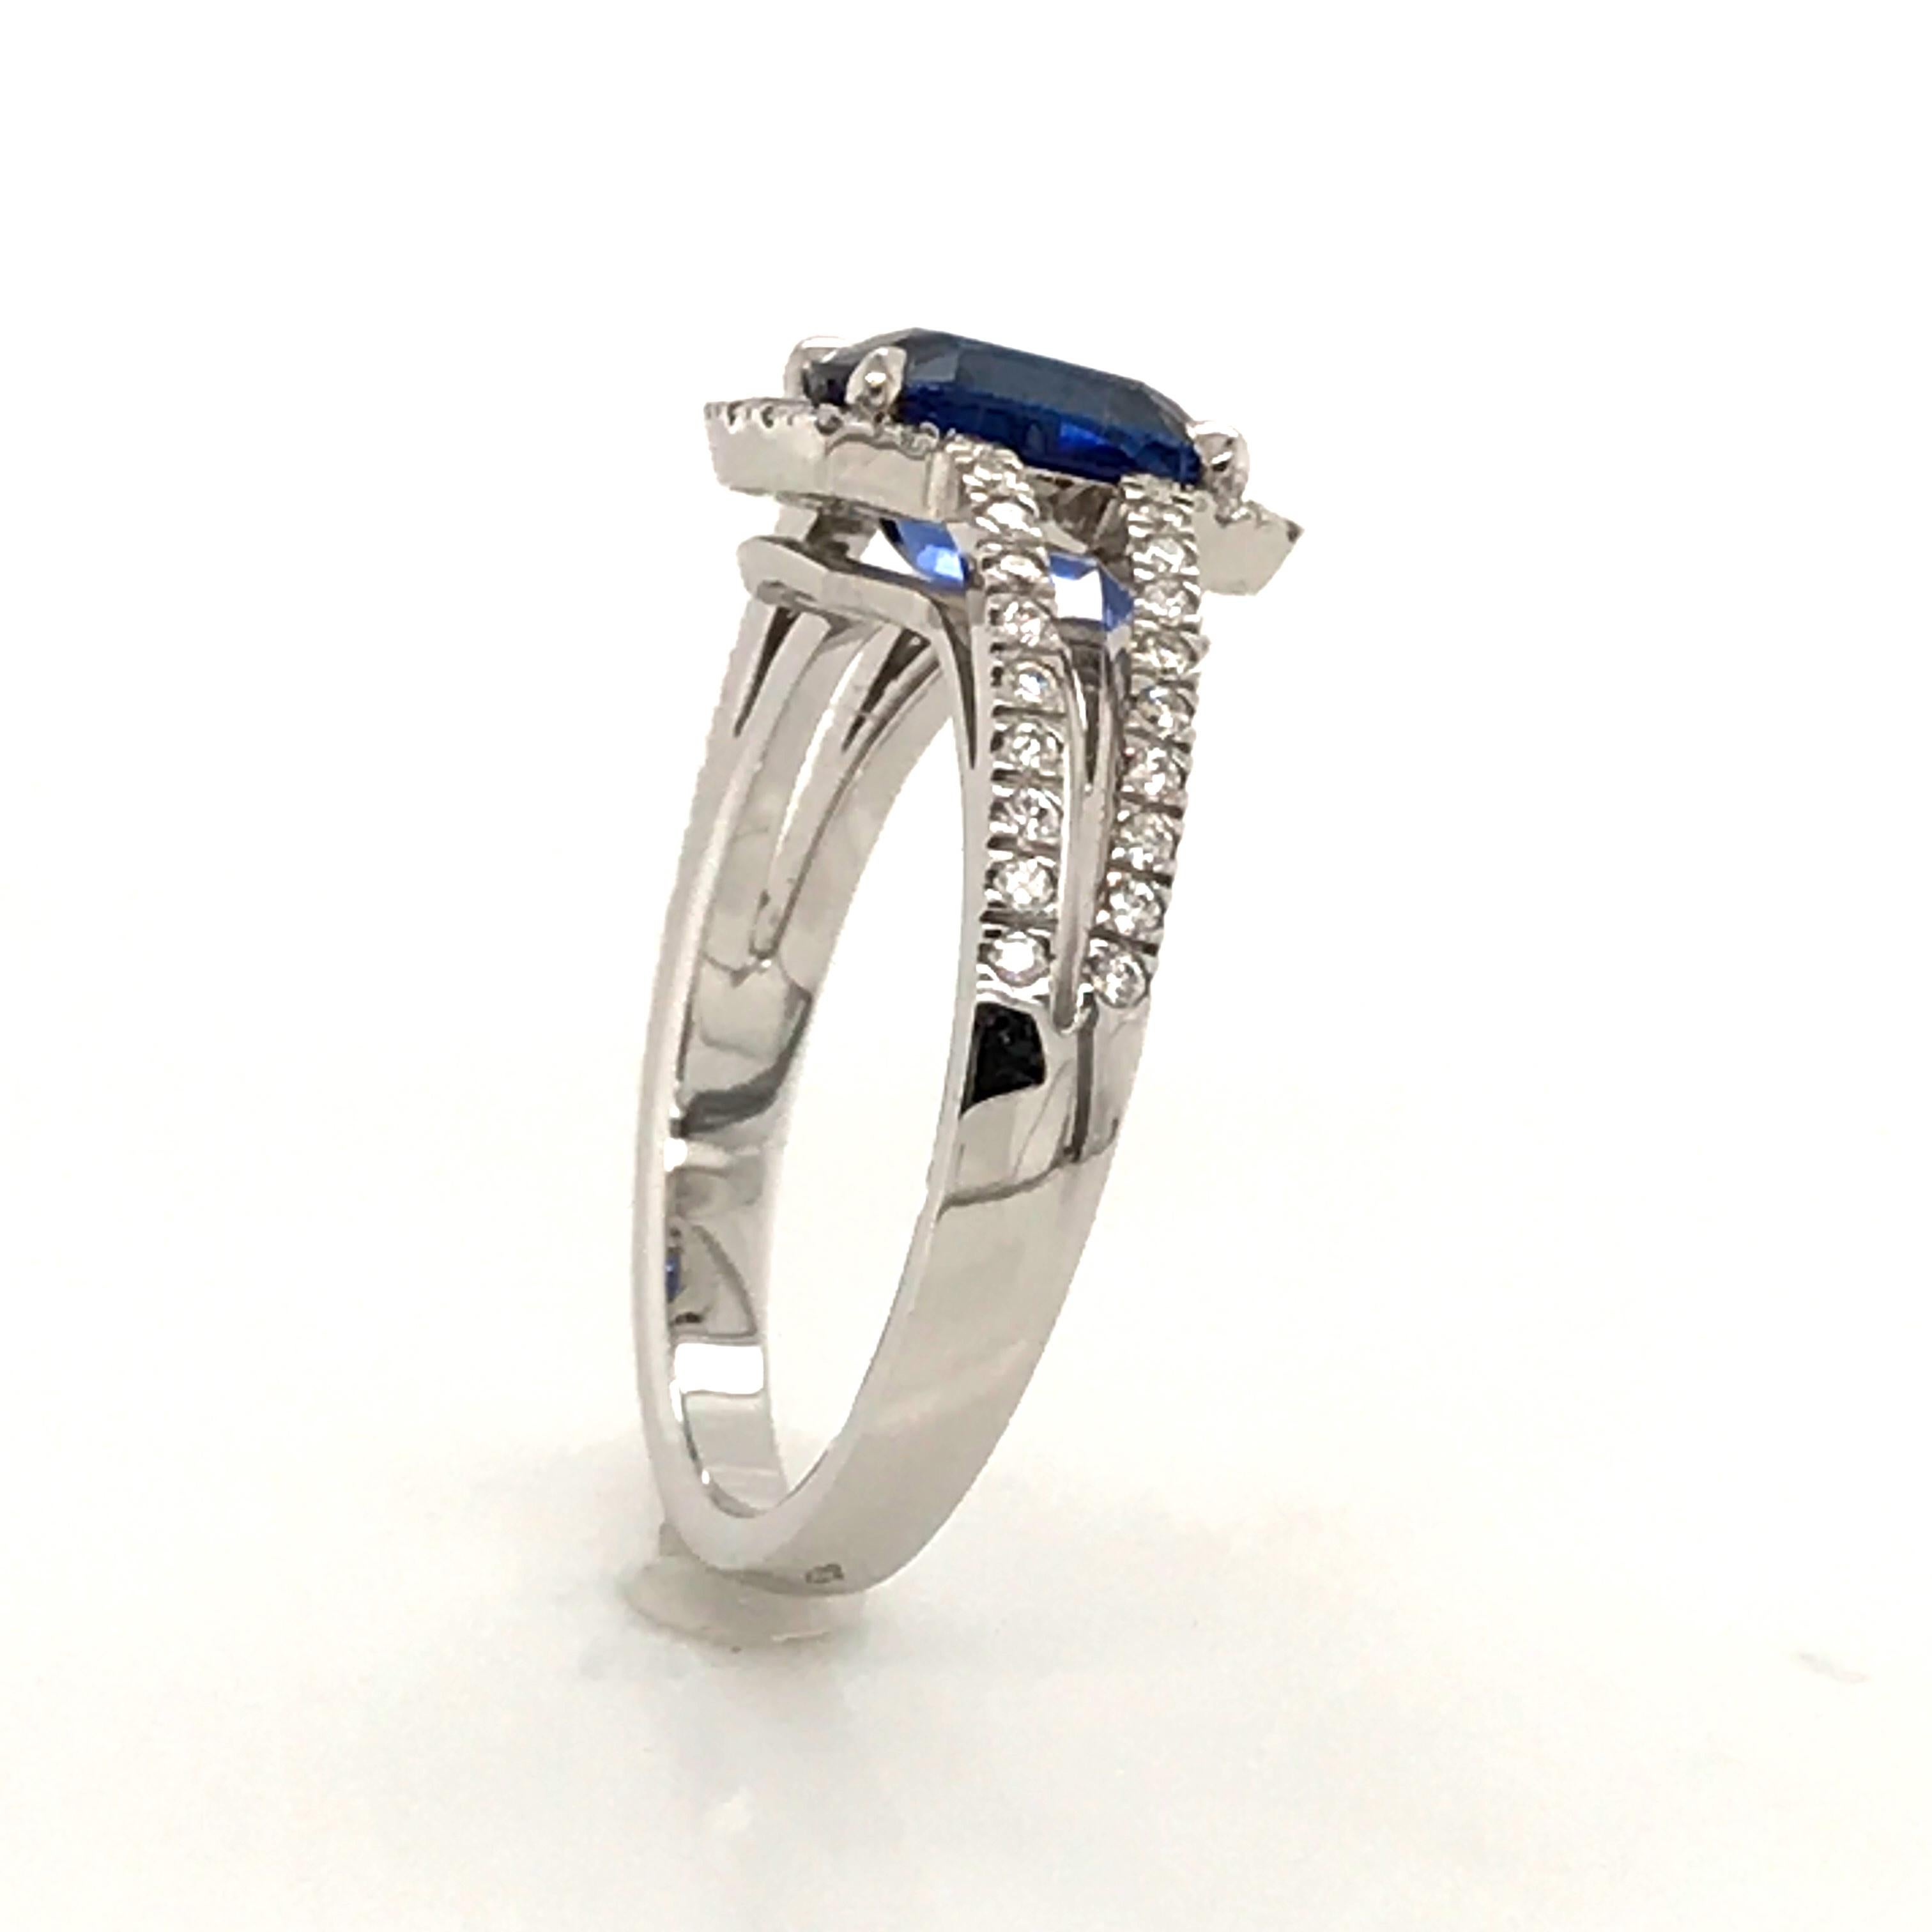 Saphir Ceylan and Whites Diamonds on White Gold 18 Karat Engagement Ring 1